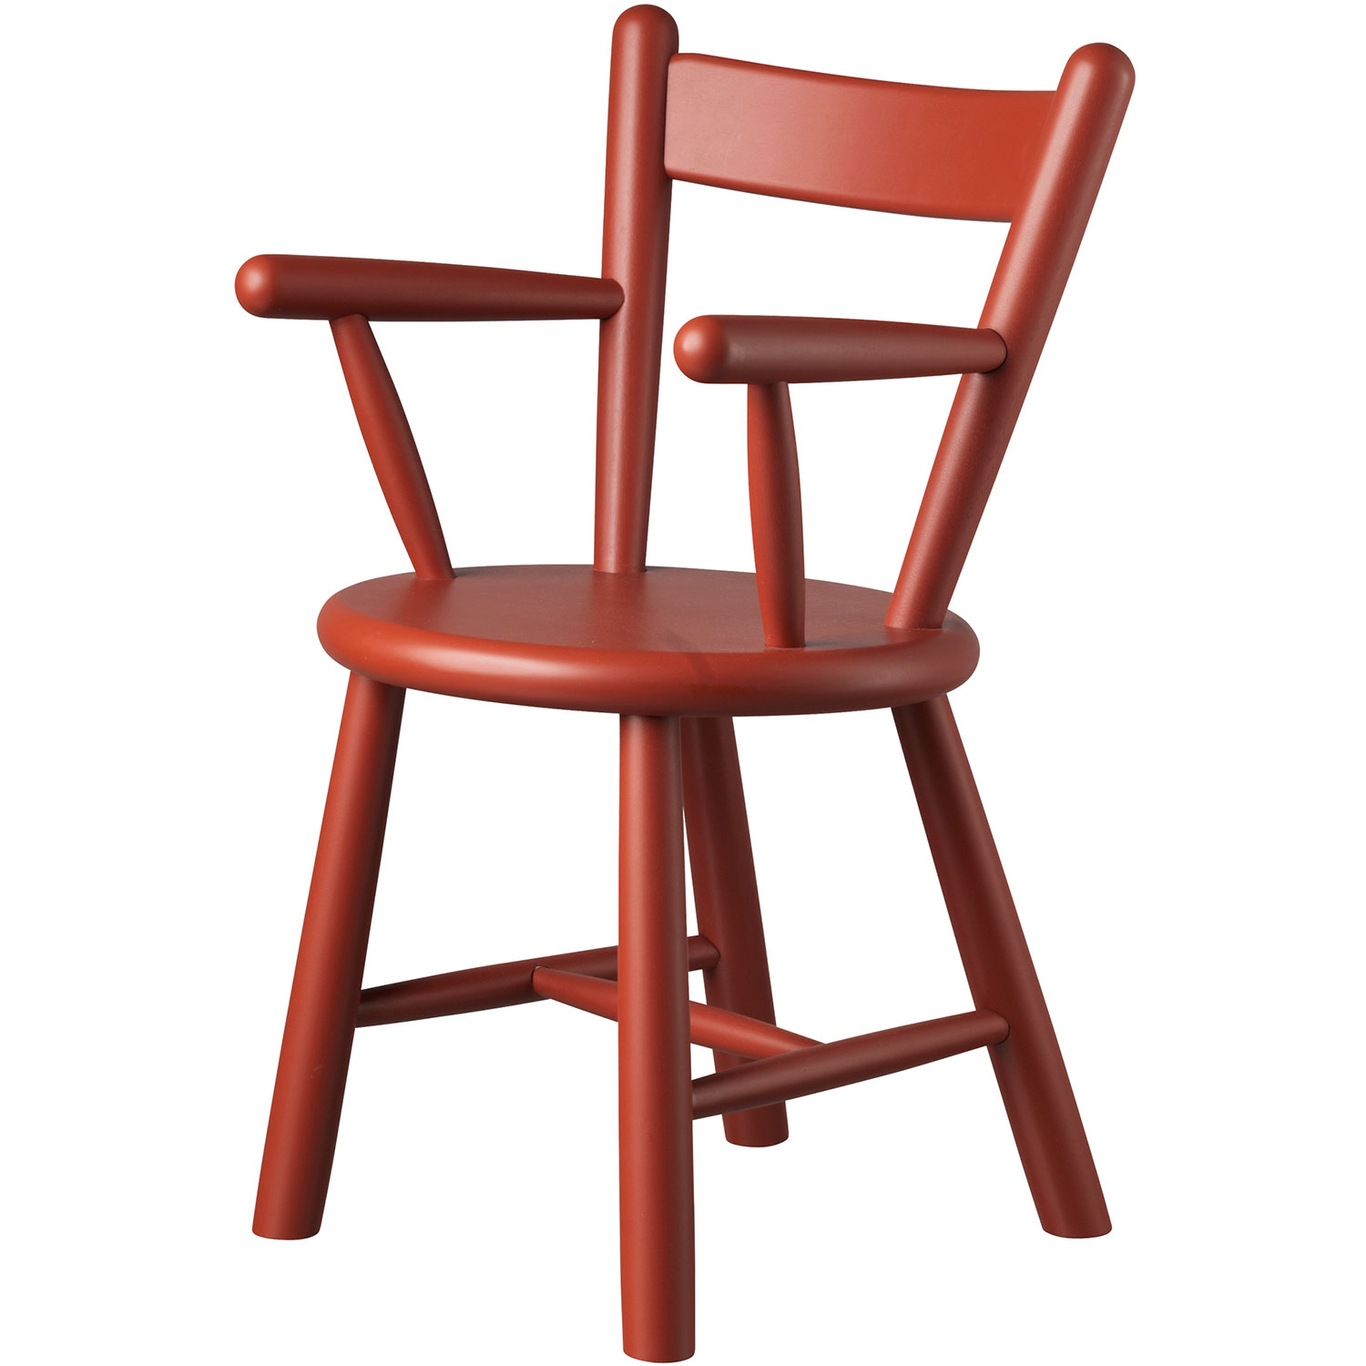 P9 Children'S Chair, Beech / Red